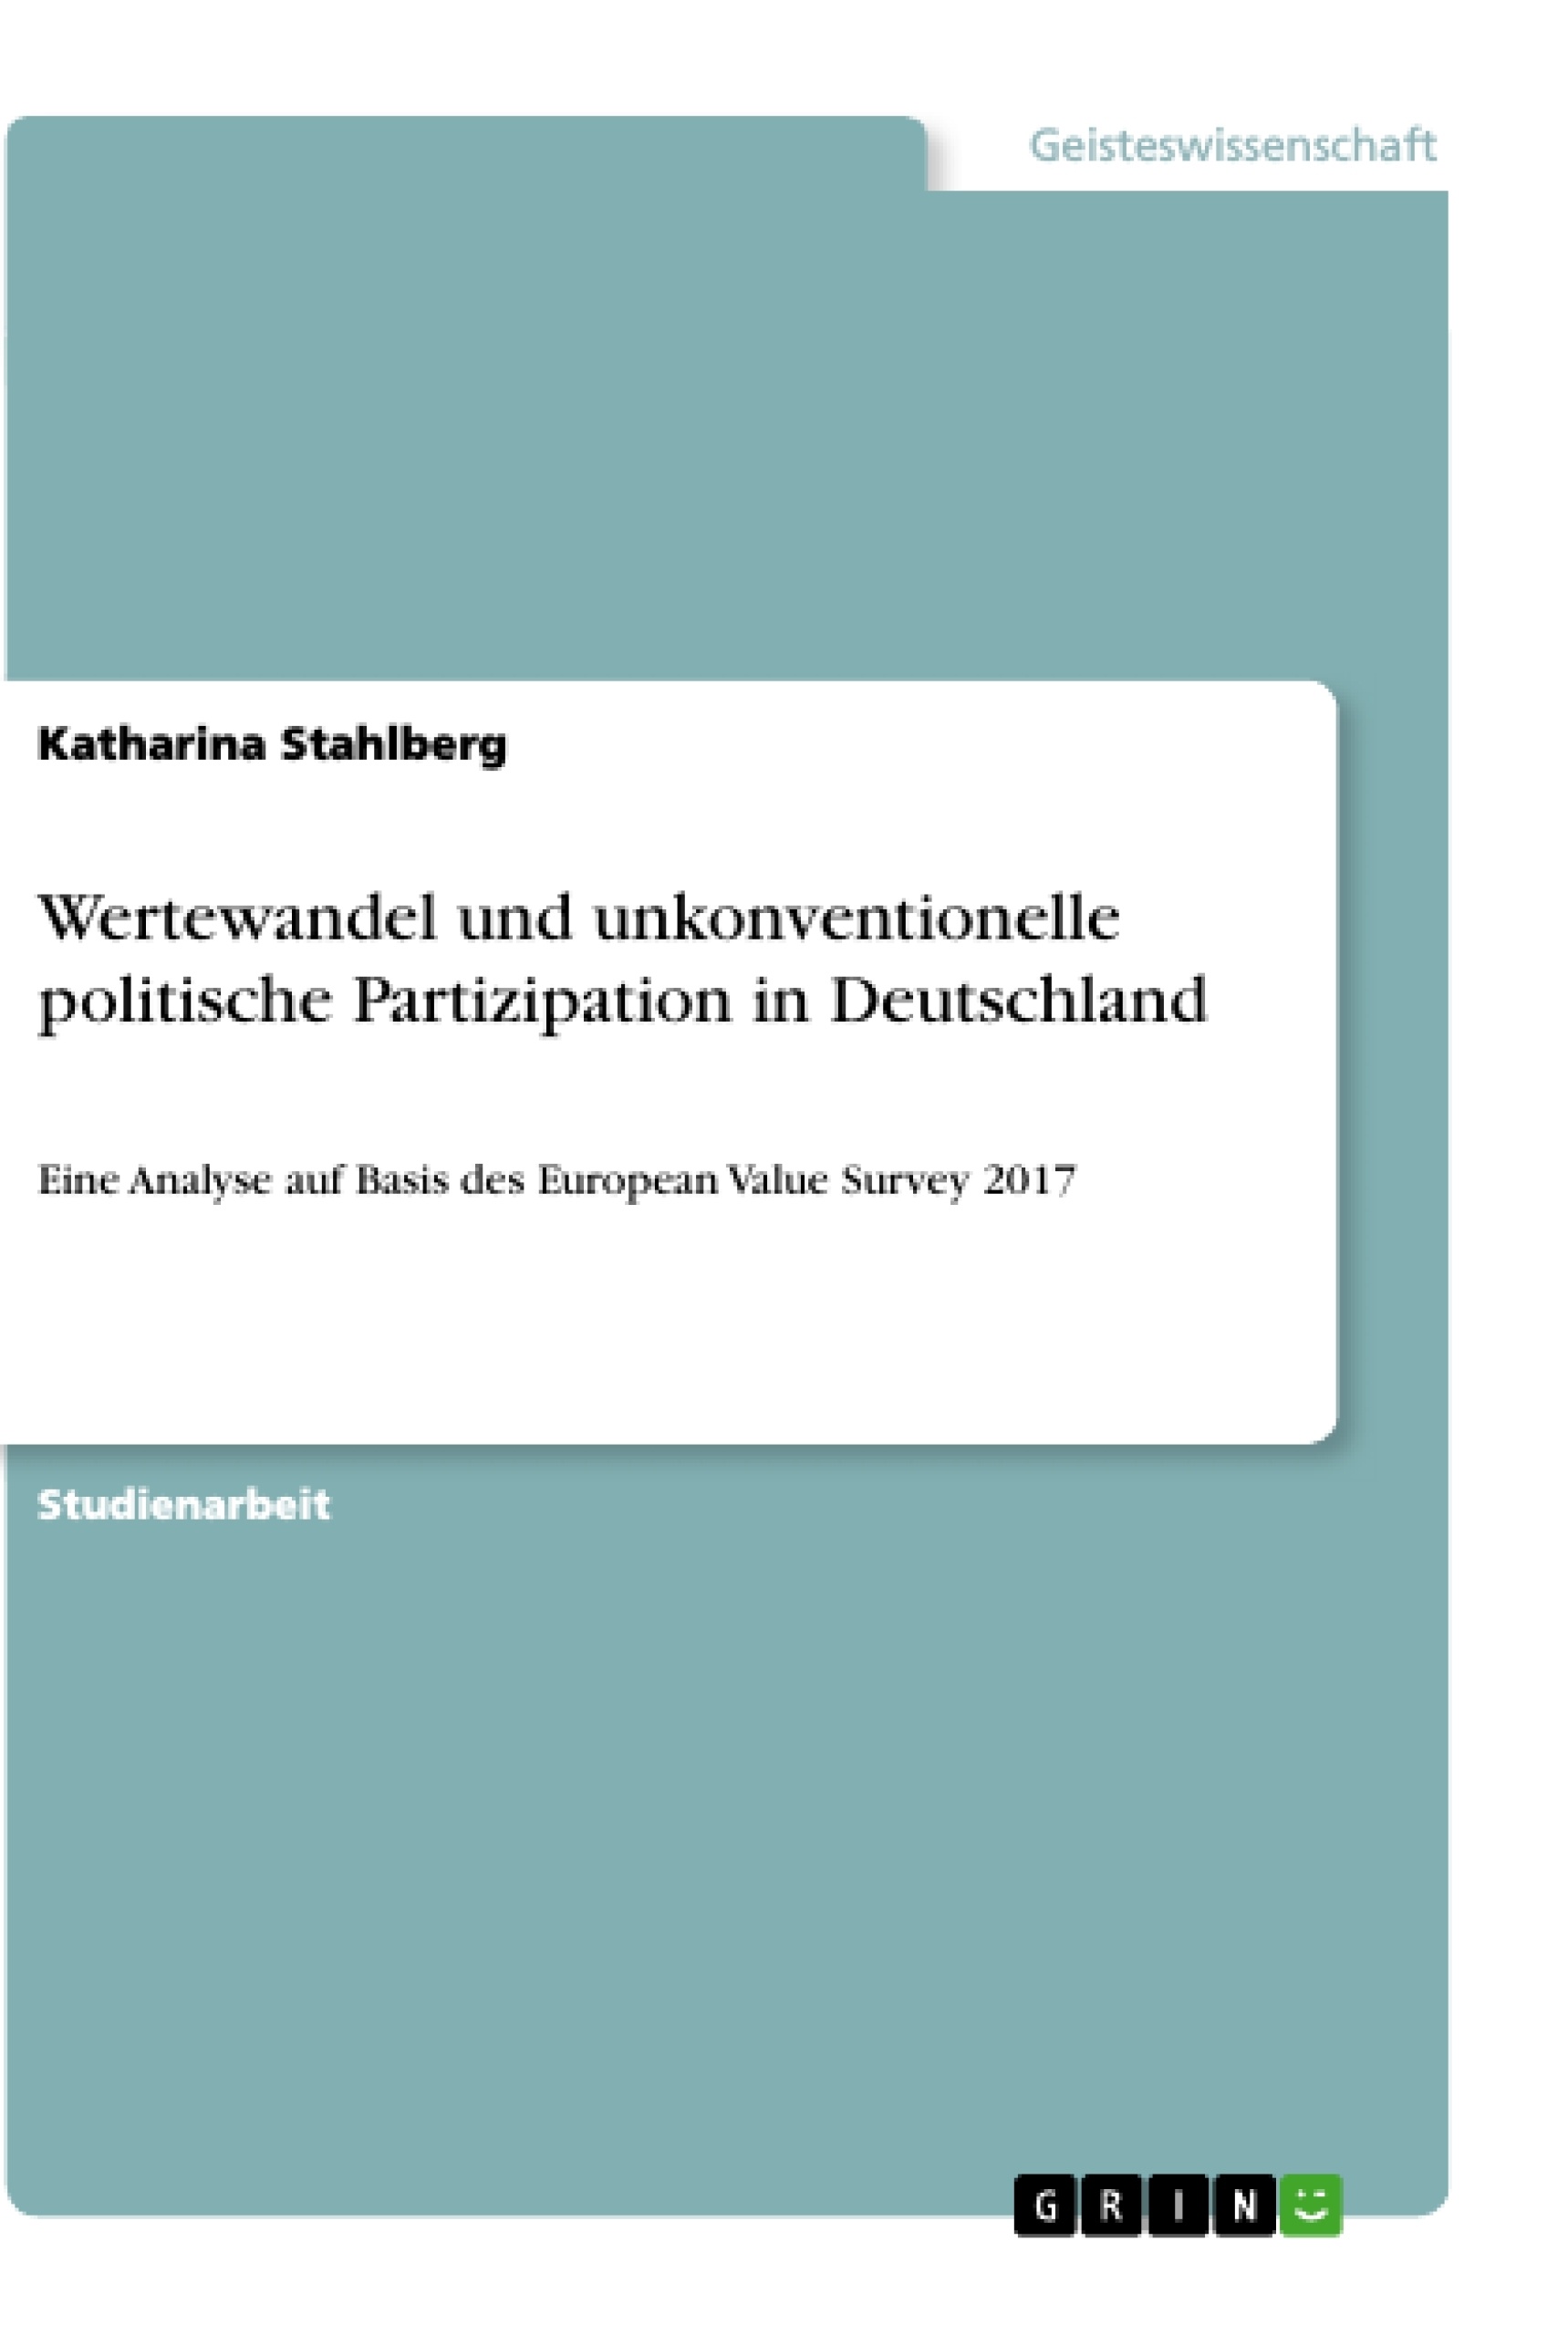 Title: Wertewandel und unkonventionelle politische Partizipation in Deutschland